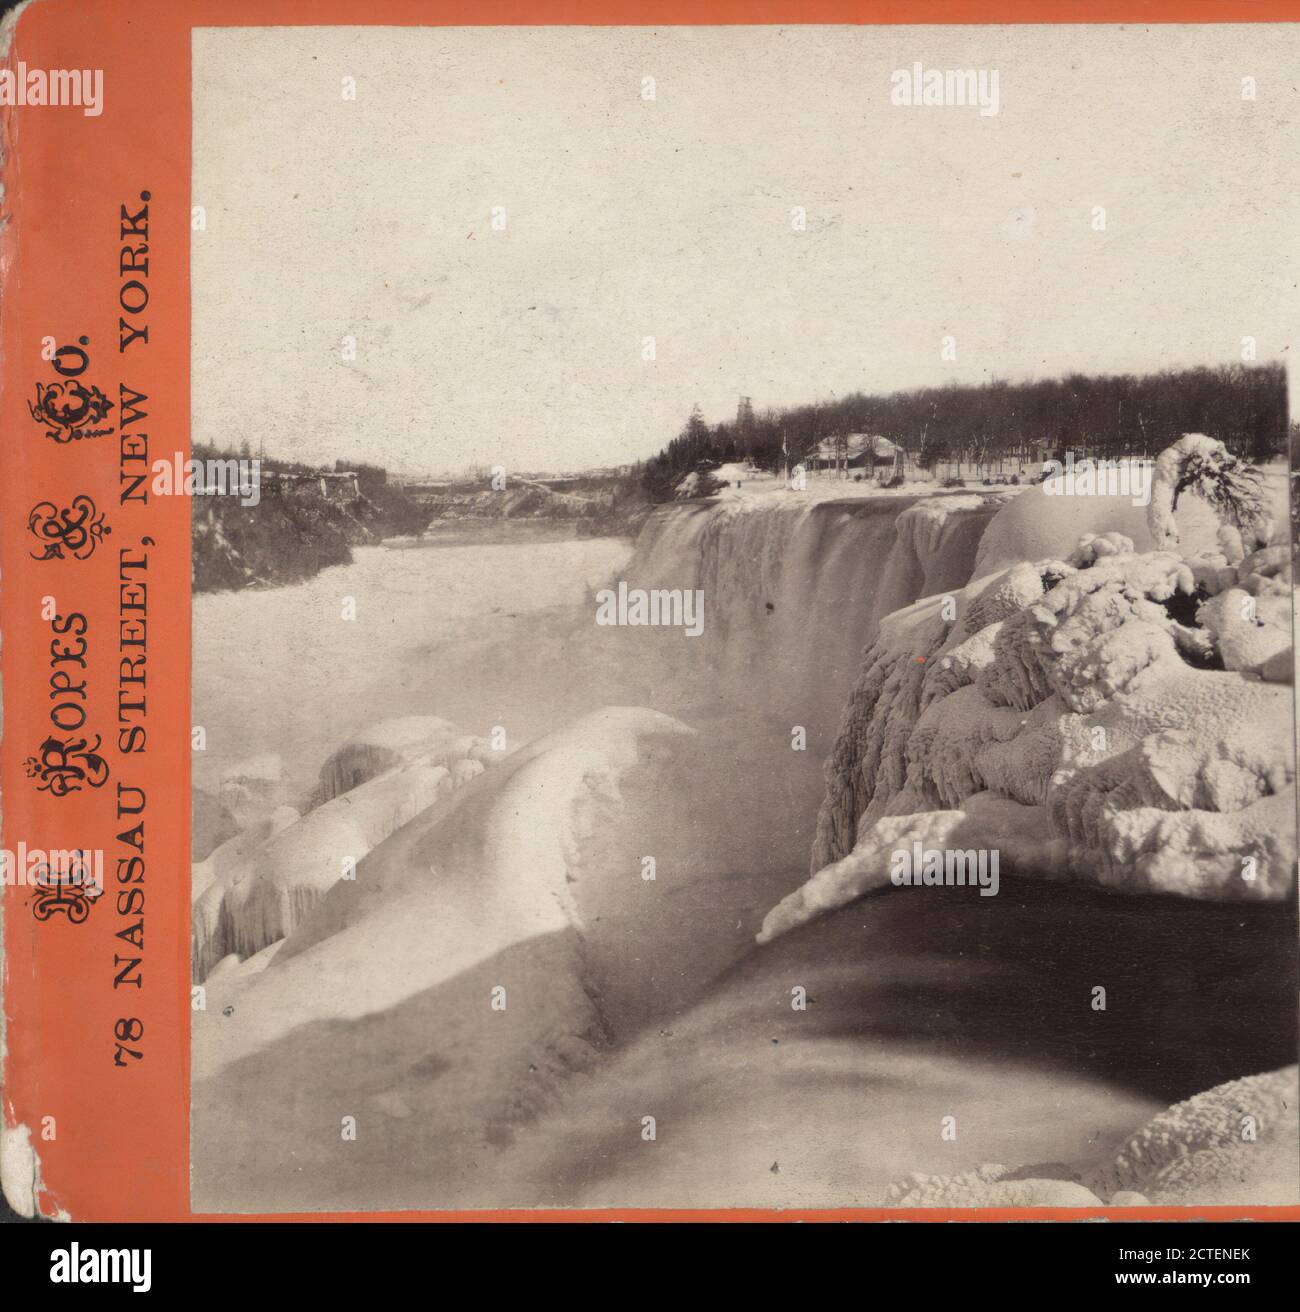 Caduta americana dalla schiena di Hog, mostrando i tumuli pesanti di ghiaccio., H. Ropes & Co., New York (Stato), Niagara Falls (N.Y. e Ont.), Niagara Falls Foto Stock